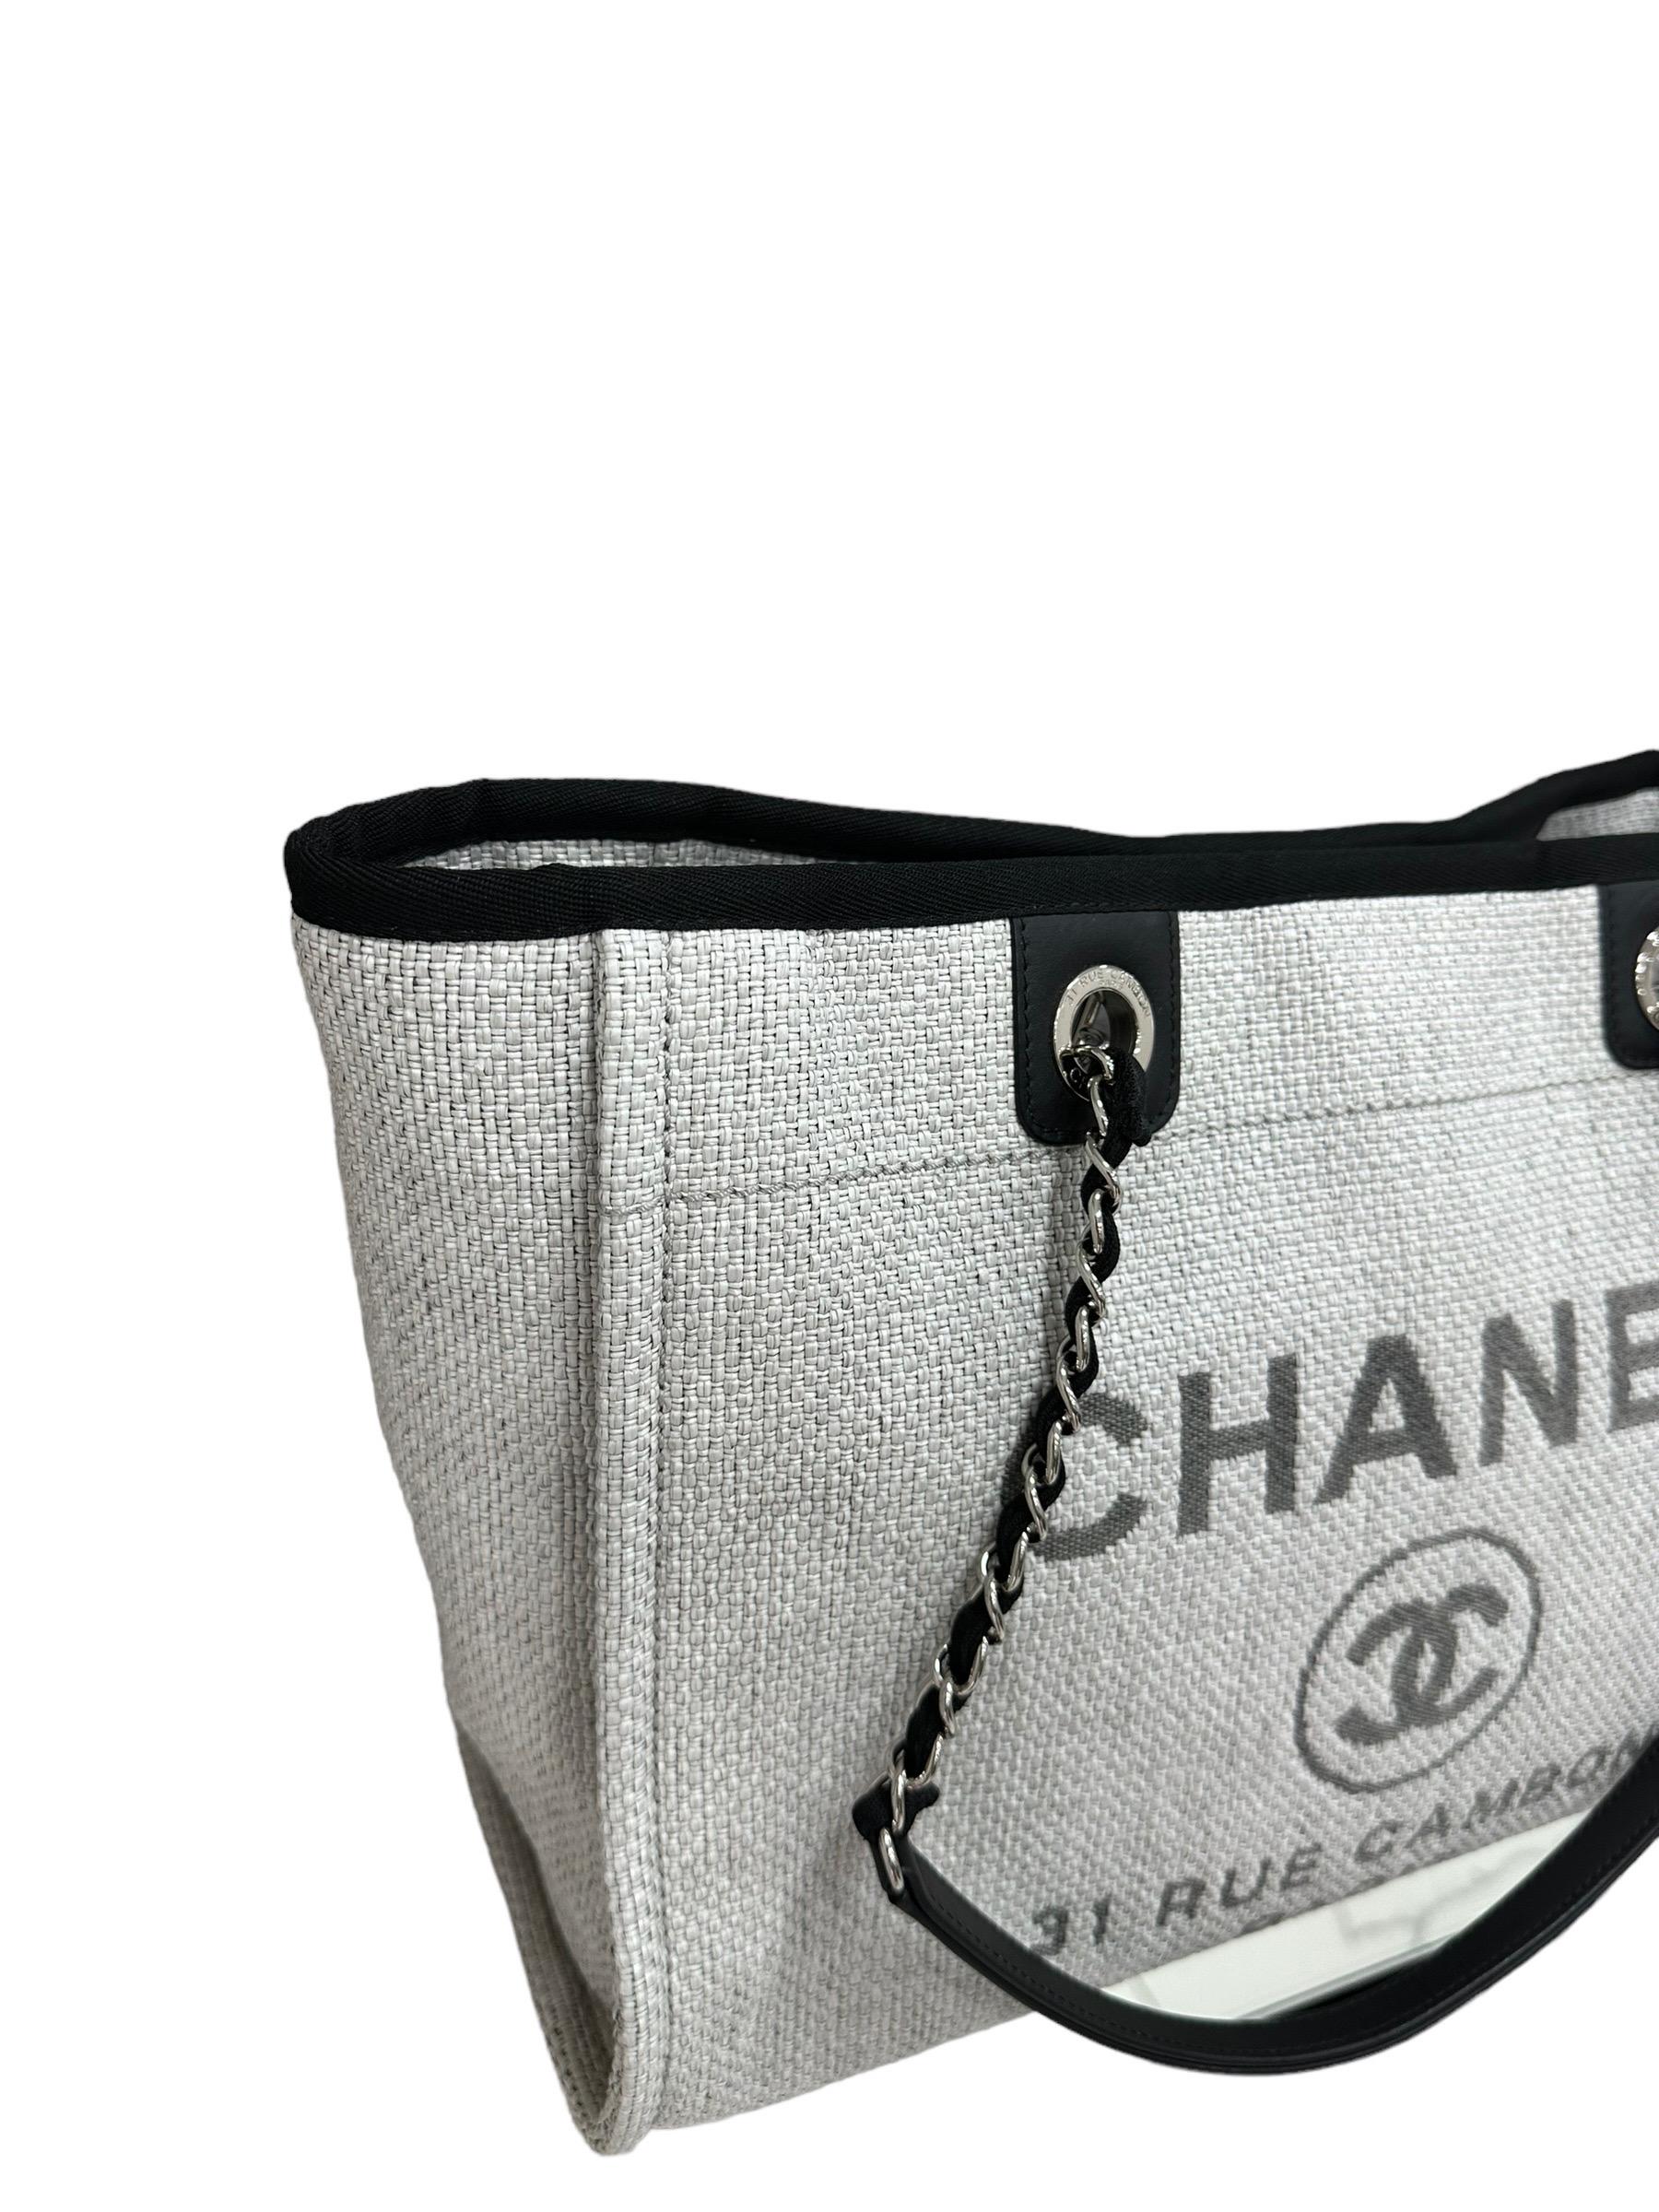 Chanel-Firmentasche, Modell Deauville, hergestellt in grünem Raupenleder mit Einsätzen aus schwarzem Leder und silberfarbenen Beschlägen. Dotata di una chiusura centrale calamitata, internamente rivestita in tela nera, molto capiente. Doppeltes